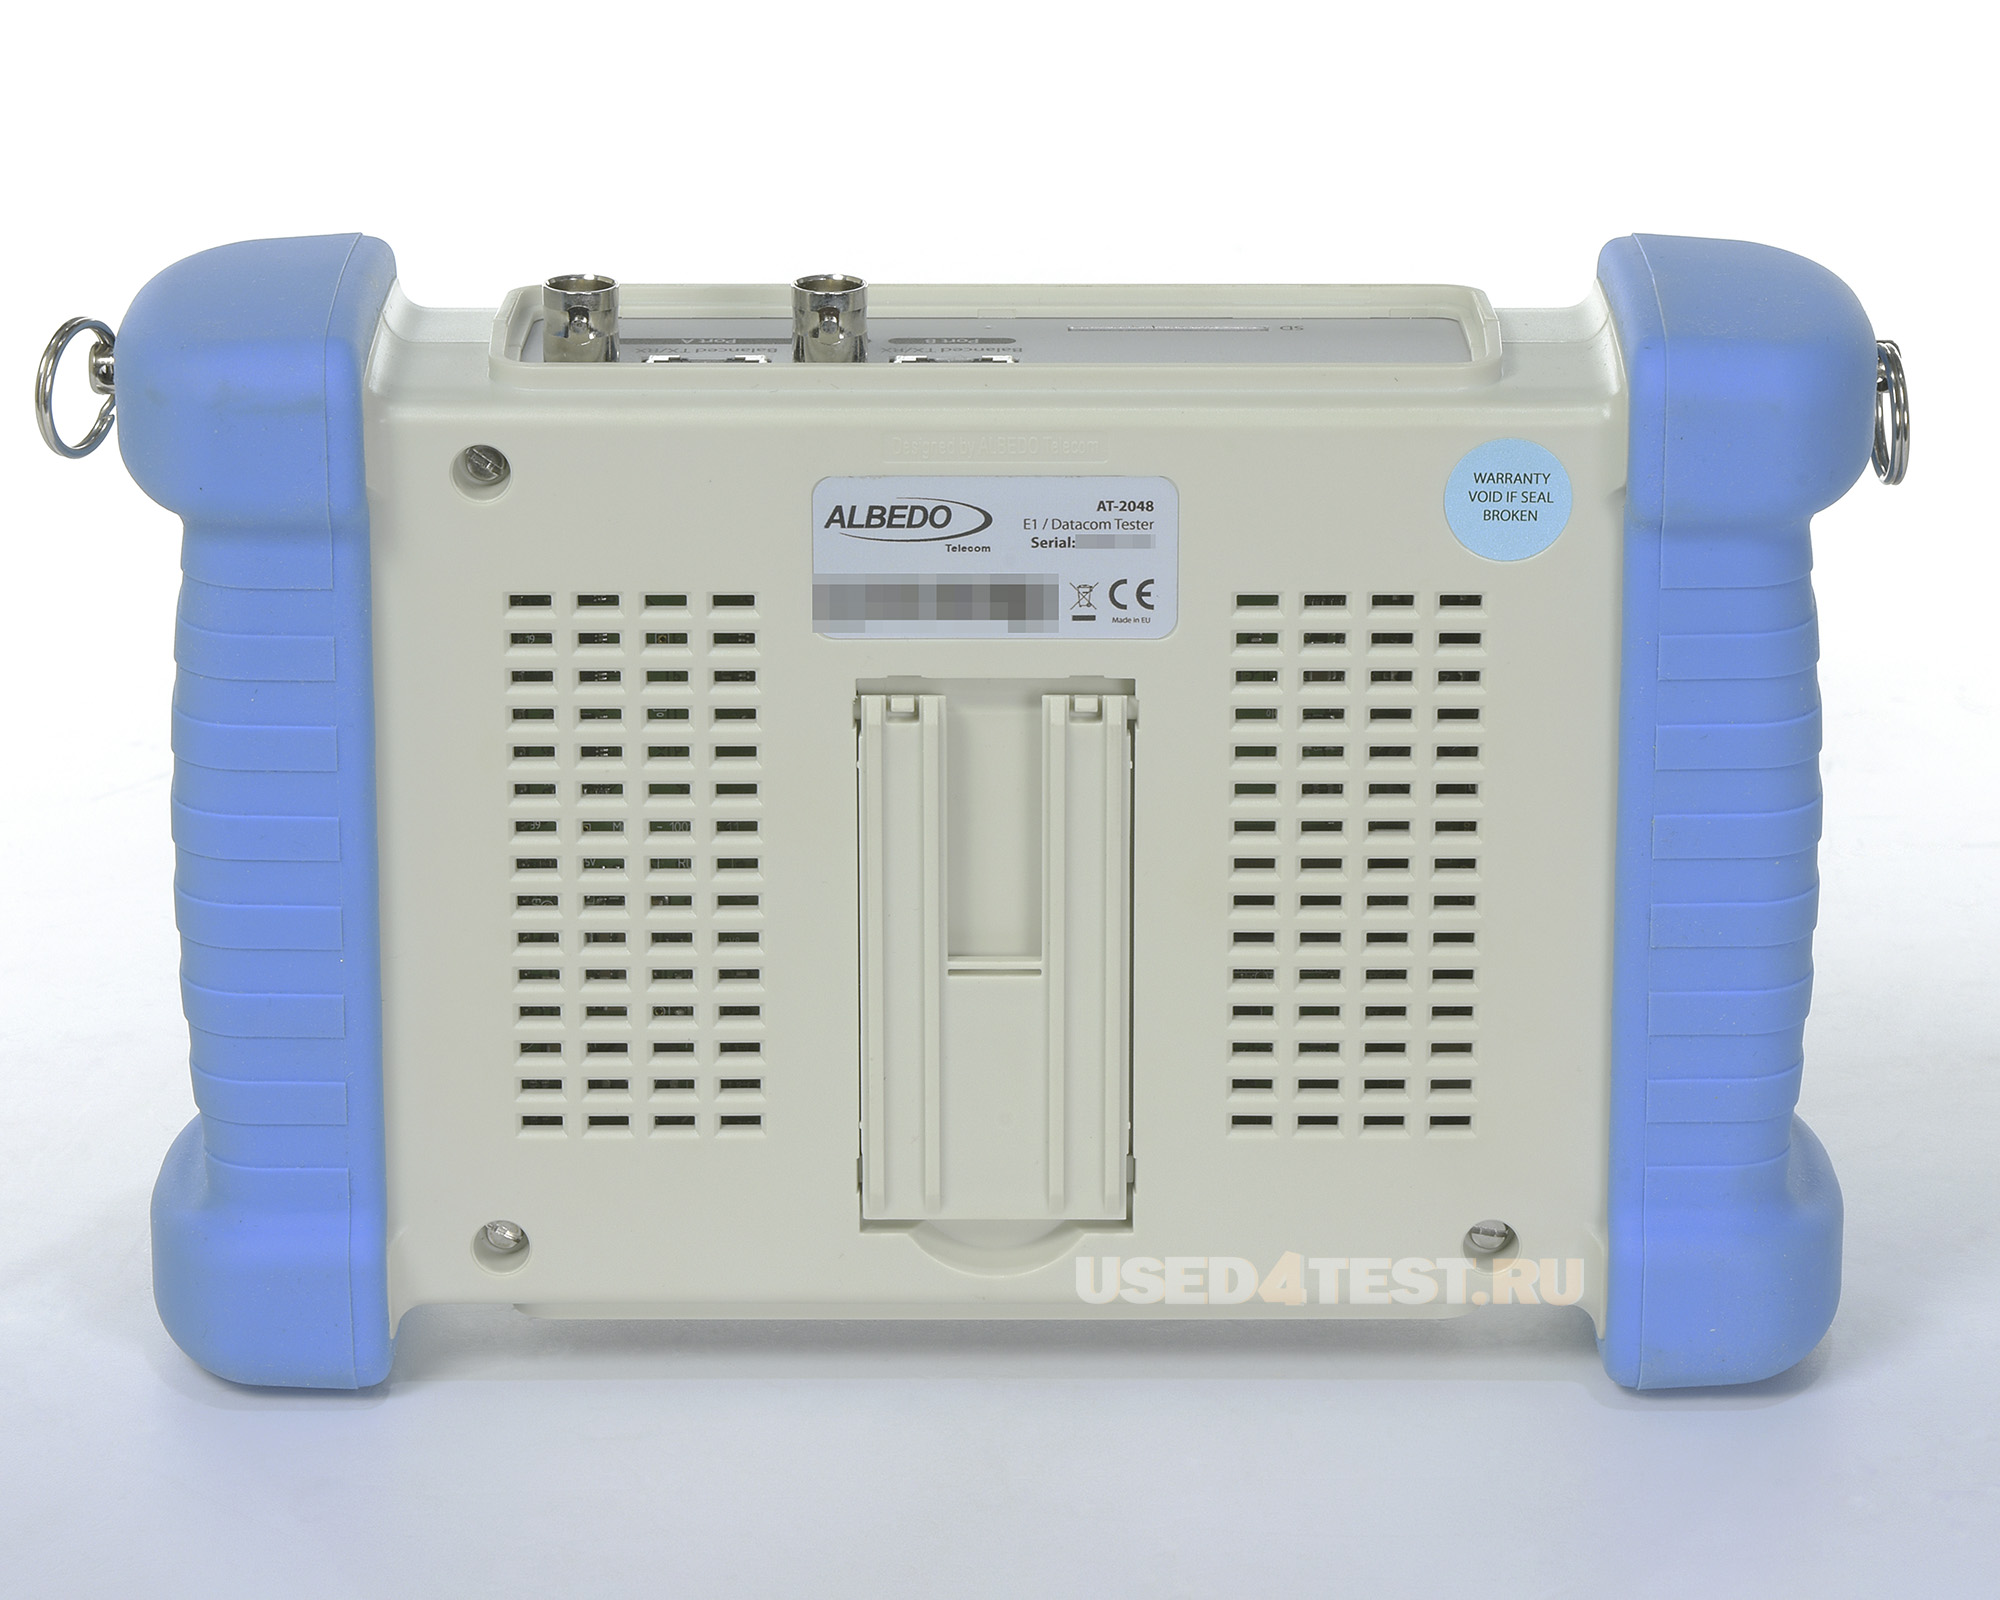 Анализатор сигнала E1 и интерфейсов данных ALBEDO Expert.E1 AT-2048